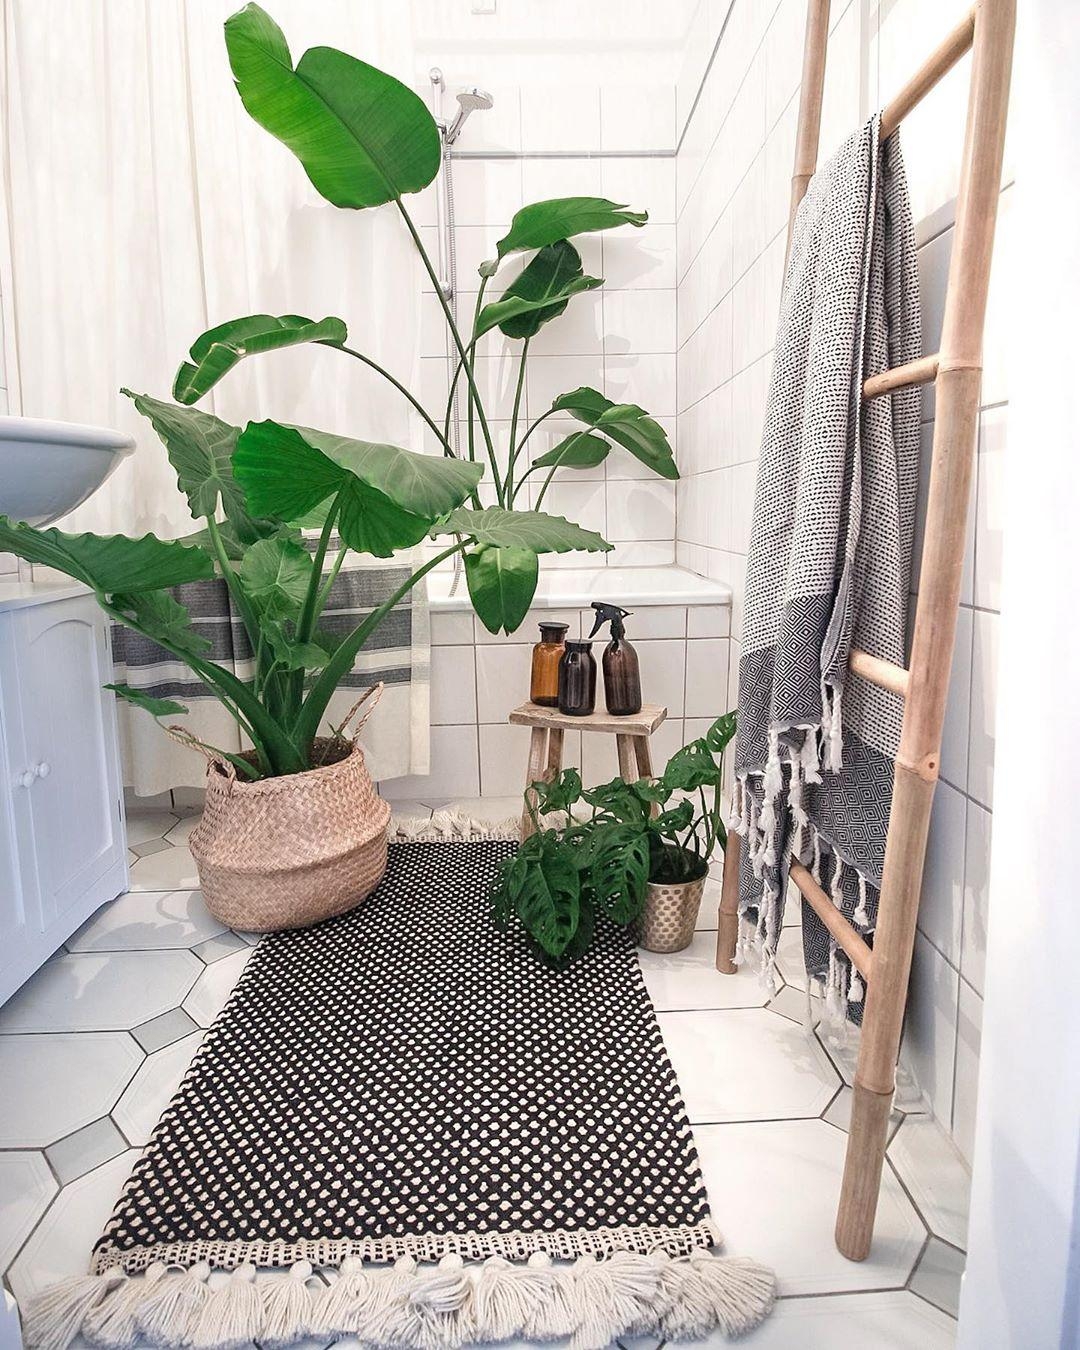 Ein Badetag für unsere #Pflanzen.🍀

#livingchallenge #badidee #badezimmer #teppich #bathroom #leiter #bad #badwanne